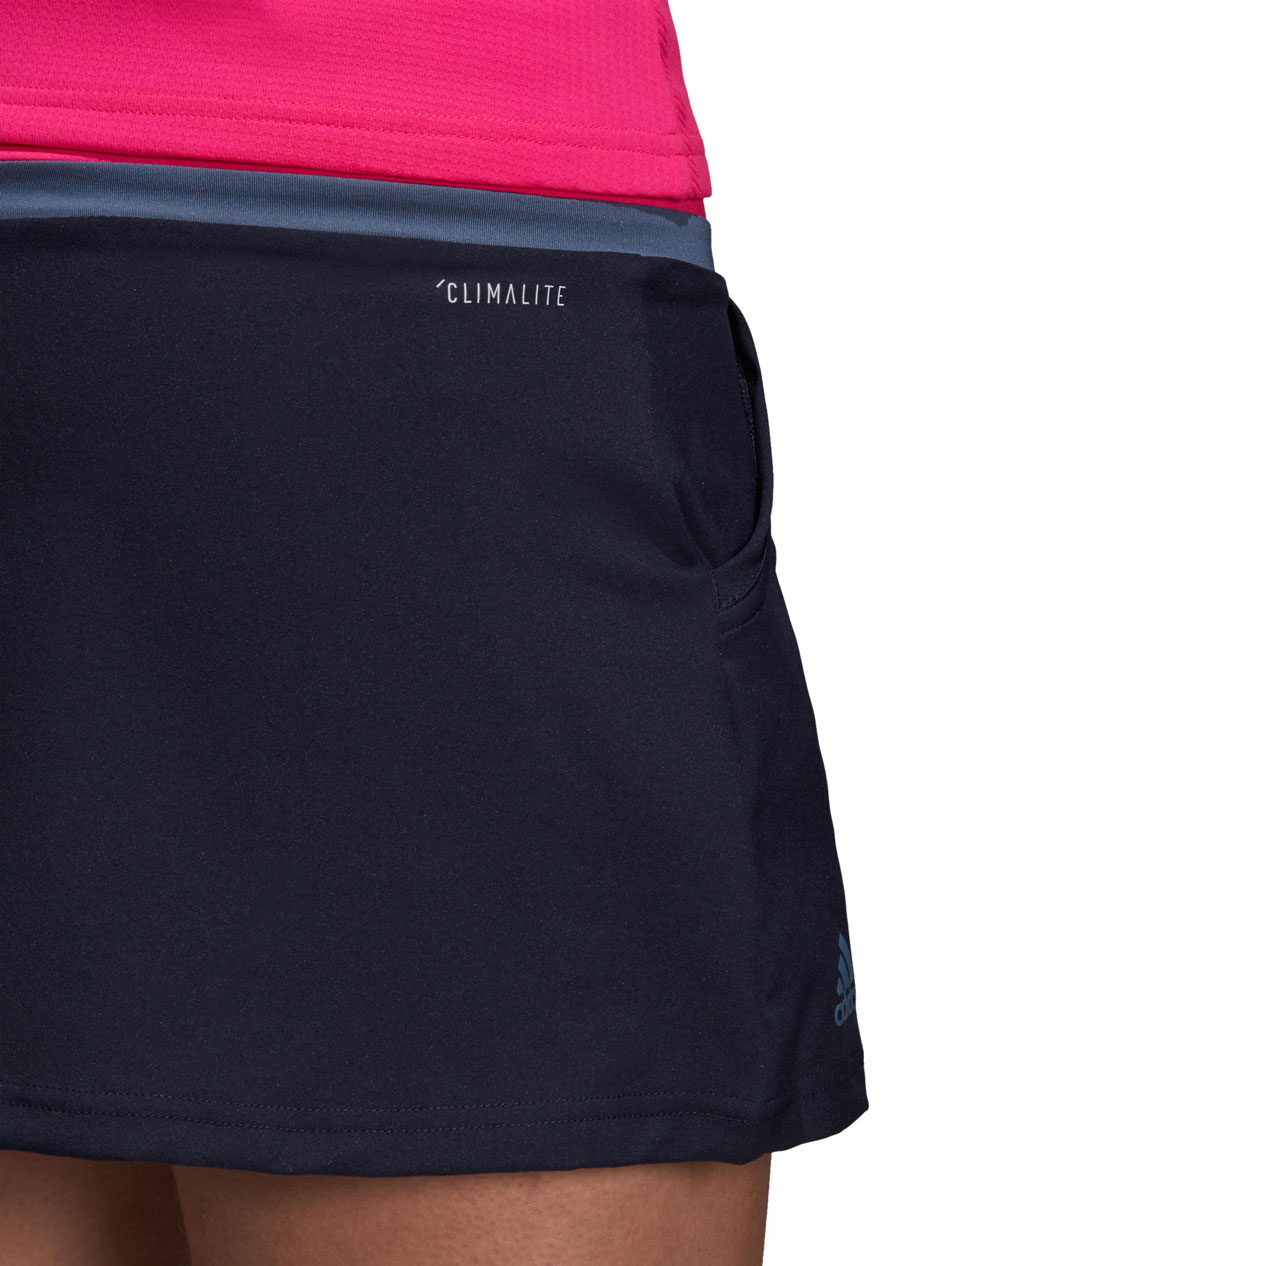 Tennis skirt